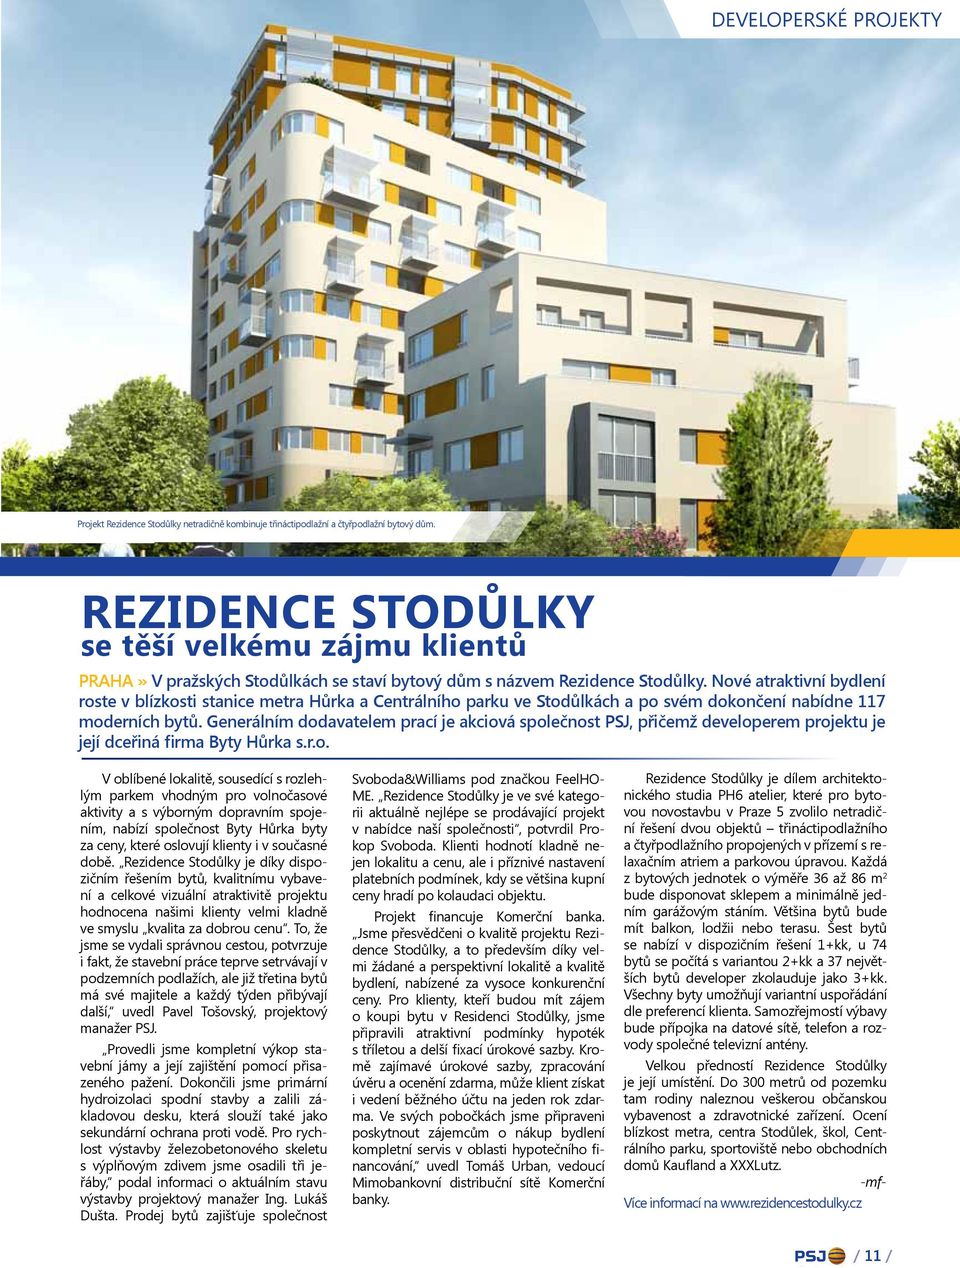 Nové atraktivní bydlení roste v blízkosti stanice metra Hůrka a Centrálního parku ve Stodůlkách a po svém dokončení nabídne 117 moderních bytů.